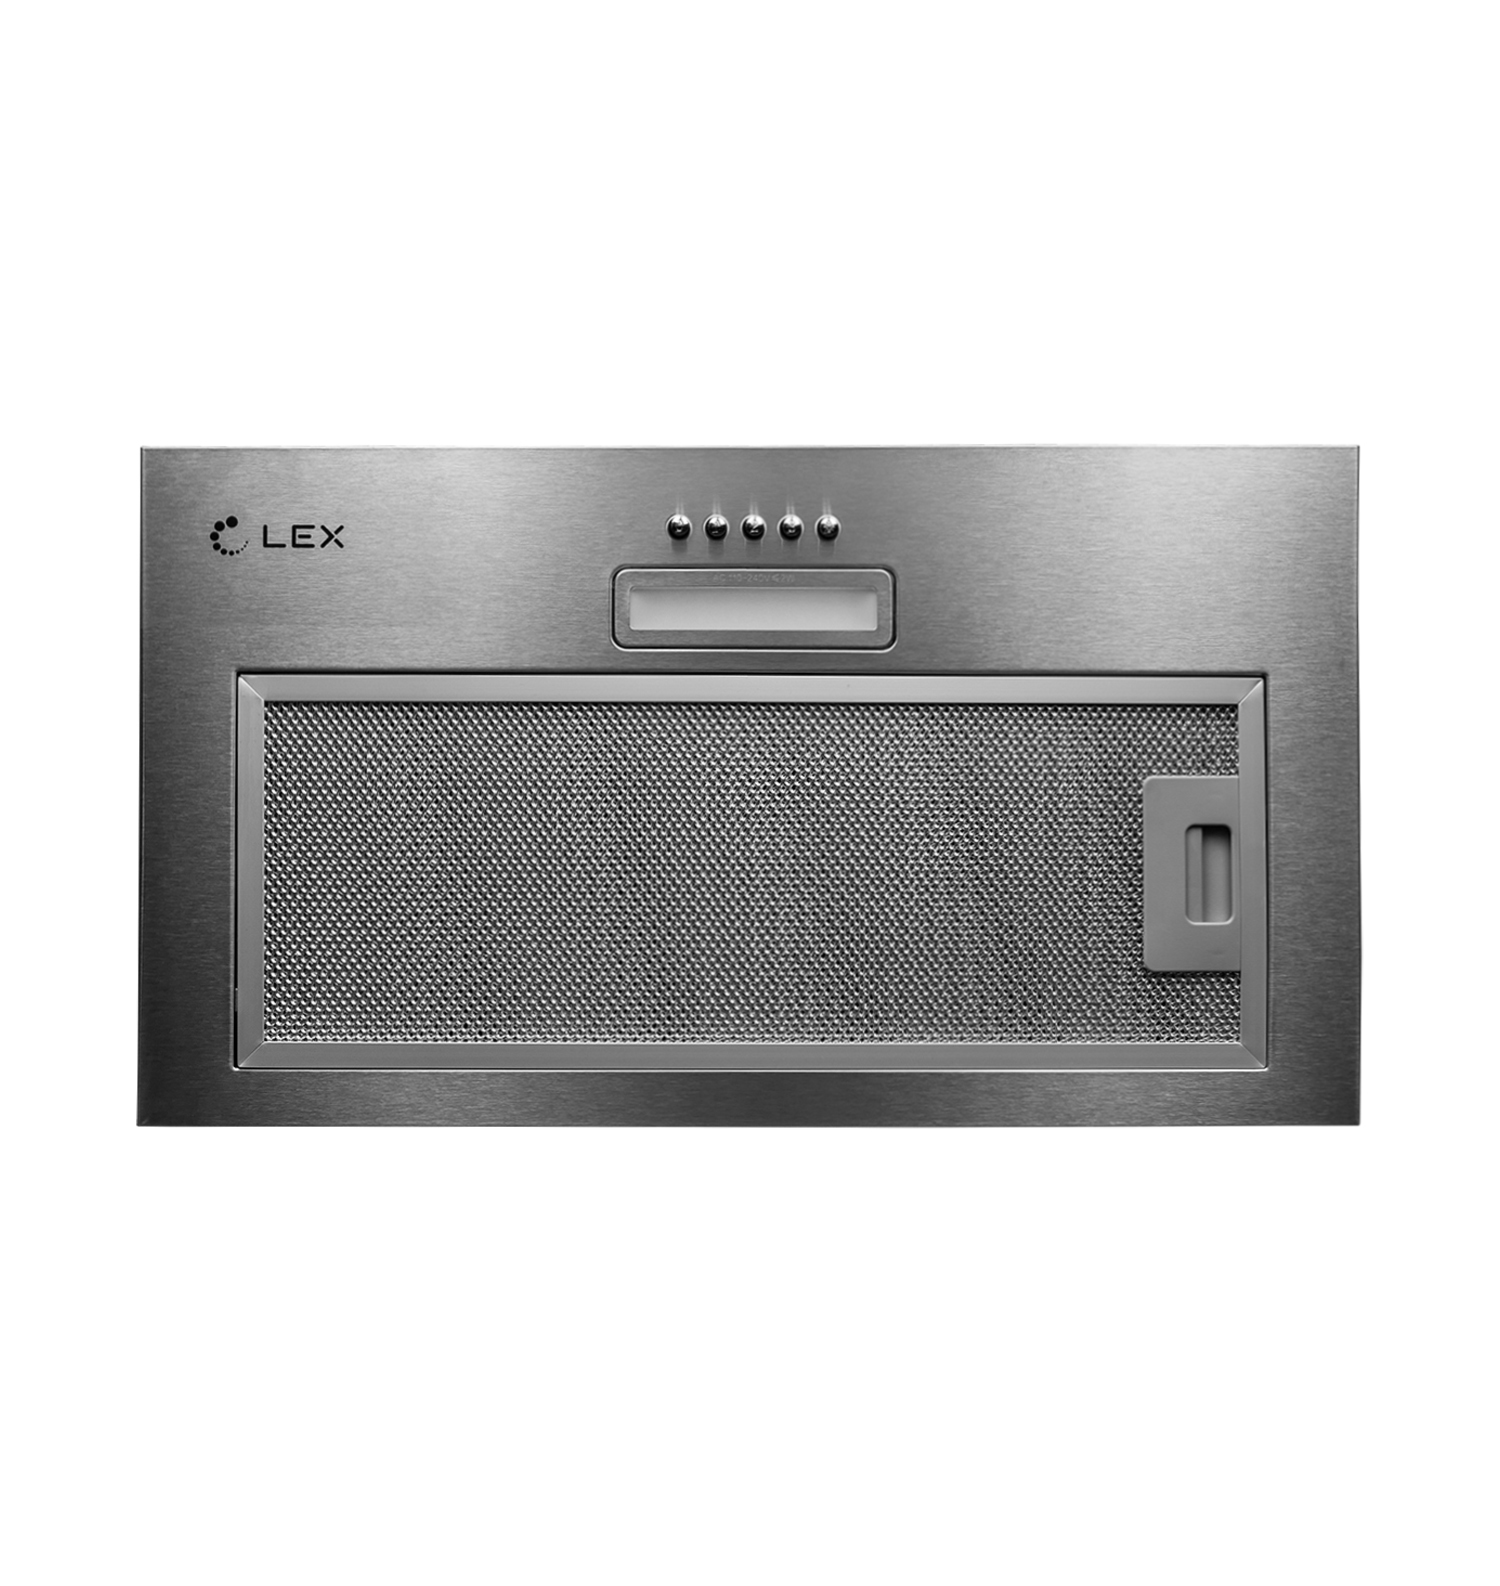 Кухонная вытяжка встраиваемая Lex GS Bloc Light 60 см серая (CHTI000328) кухонная вытяжка встраиваемая lex ghost 60 см серая trfe000008